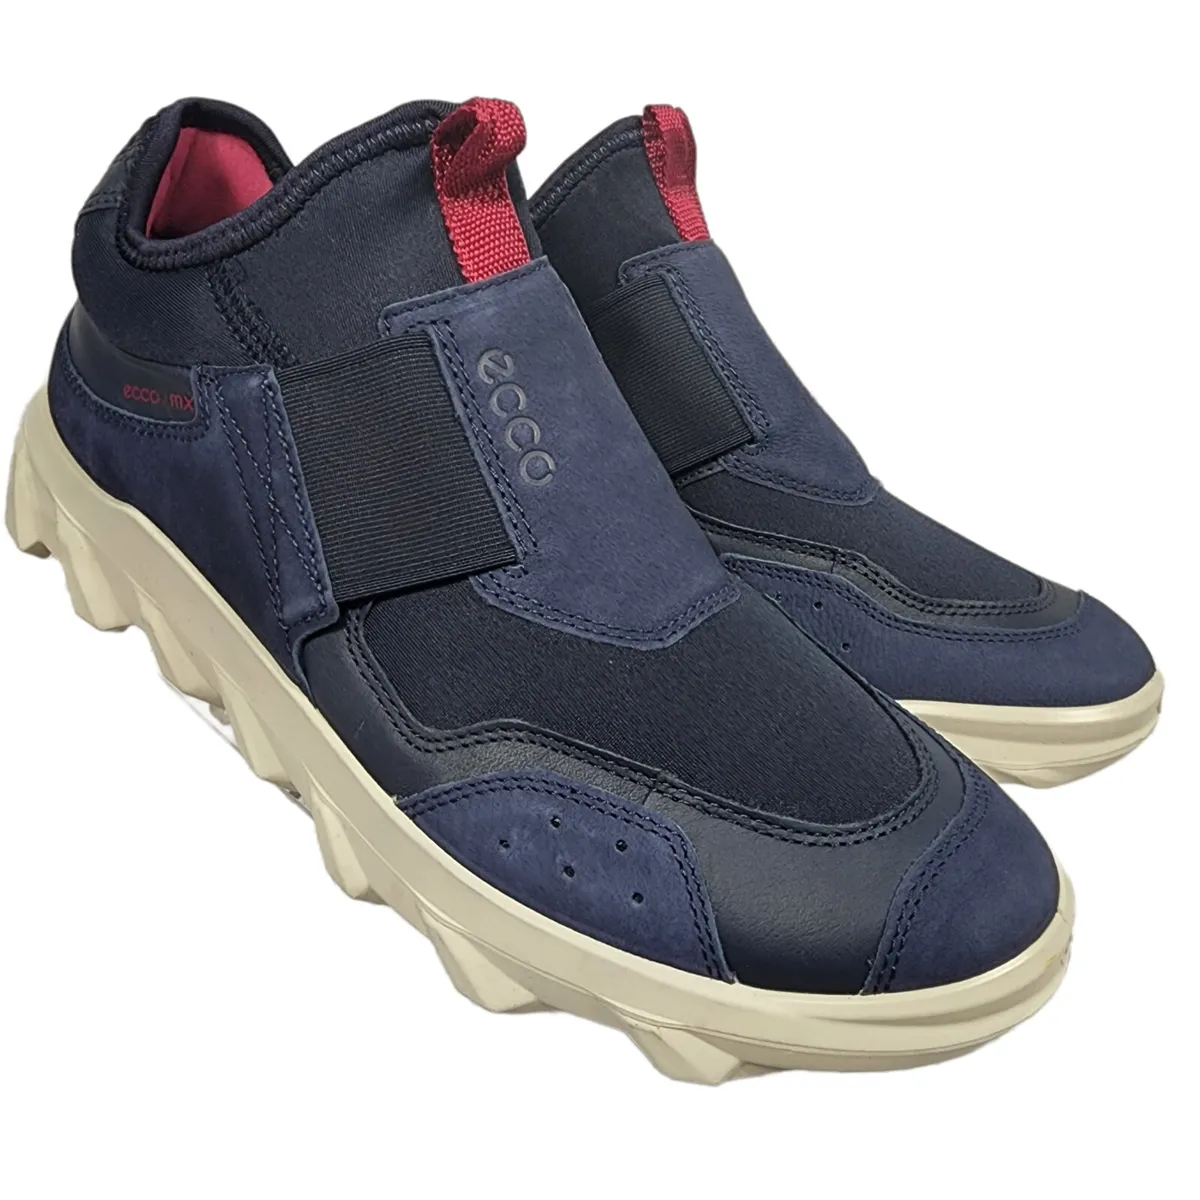 Ecco Women&#039;s Size 9 MX Low Slip On Sneaker | eBay